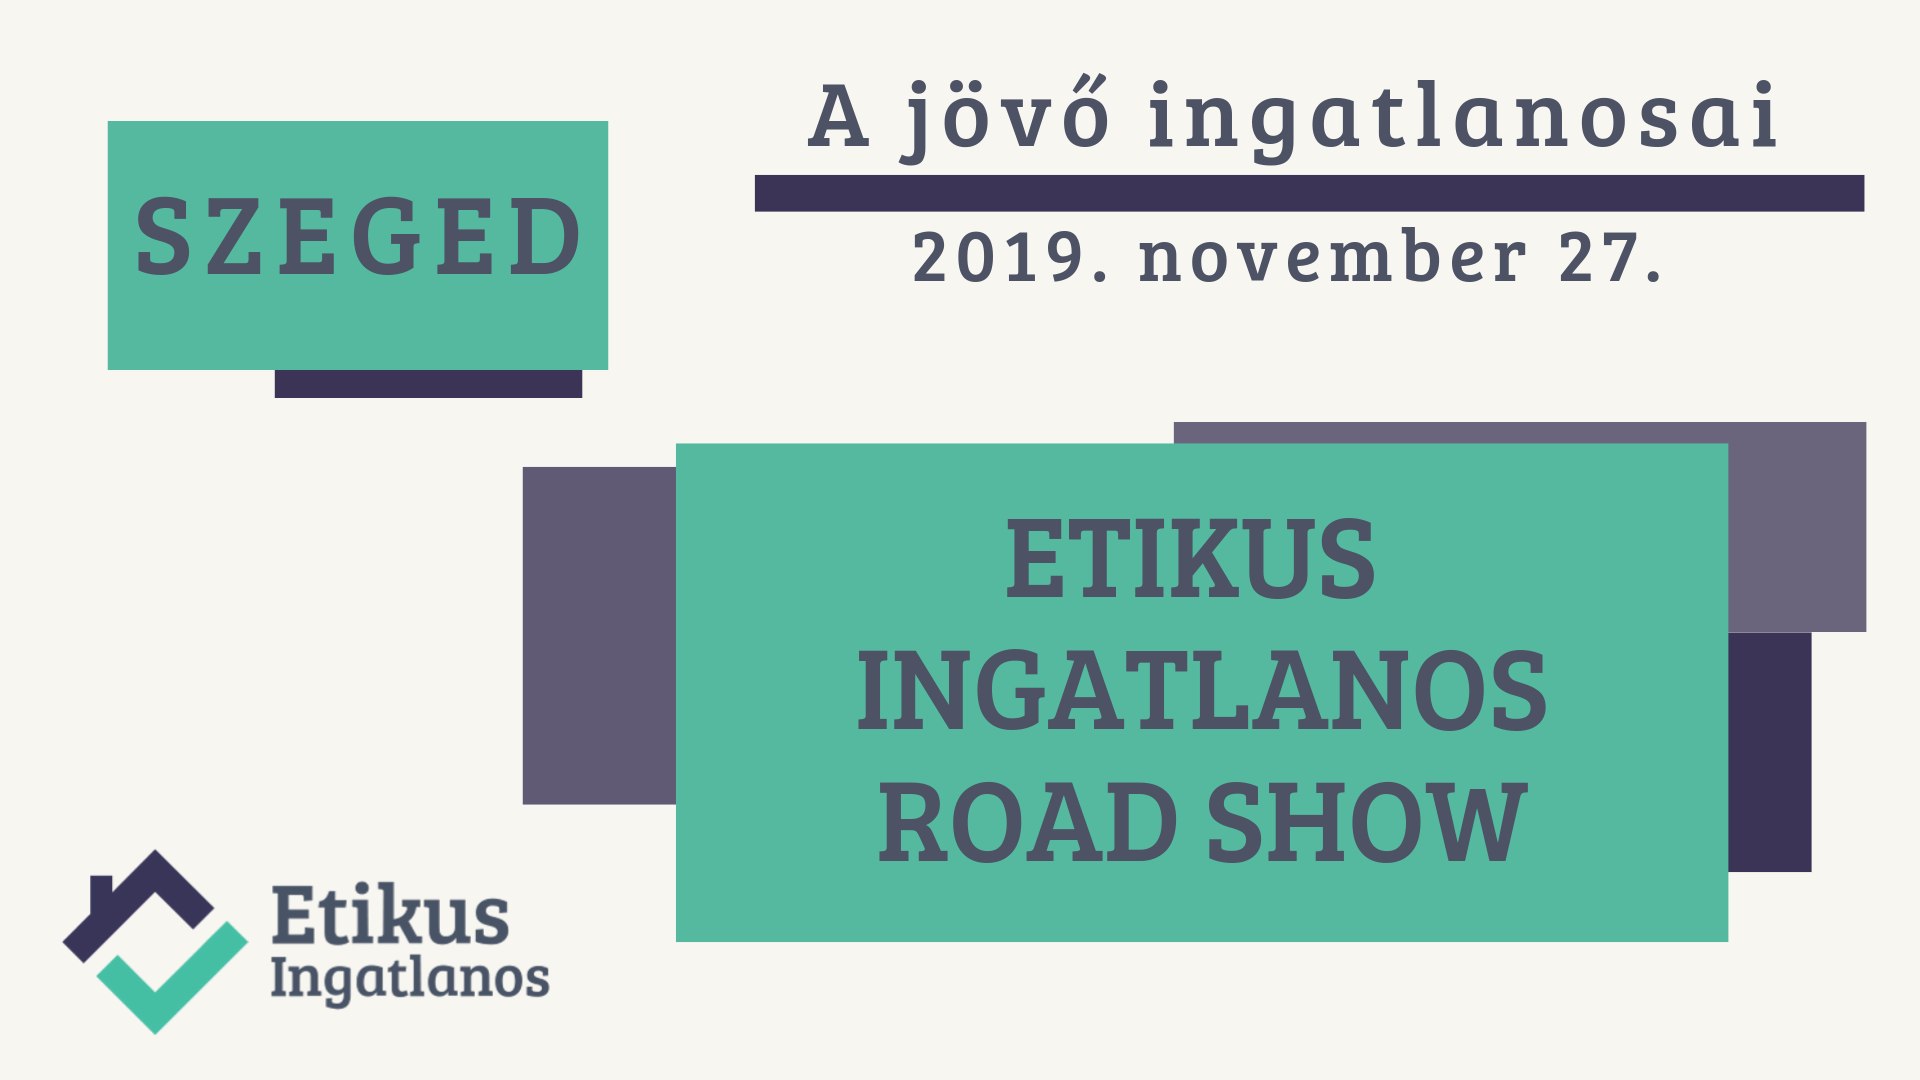 Egy képen a közelgő Etikus Ingatlanos RoadShow - 2019 november 27. - Szegedadatai láthatóak.